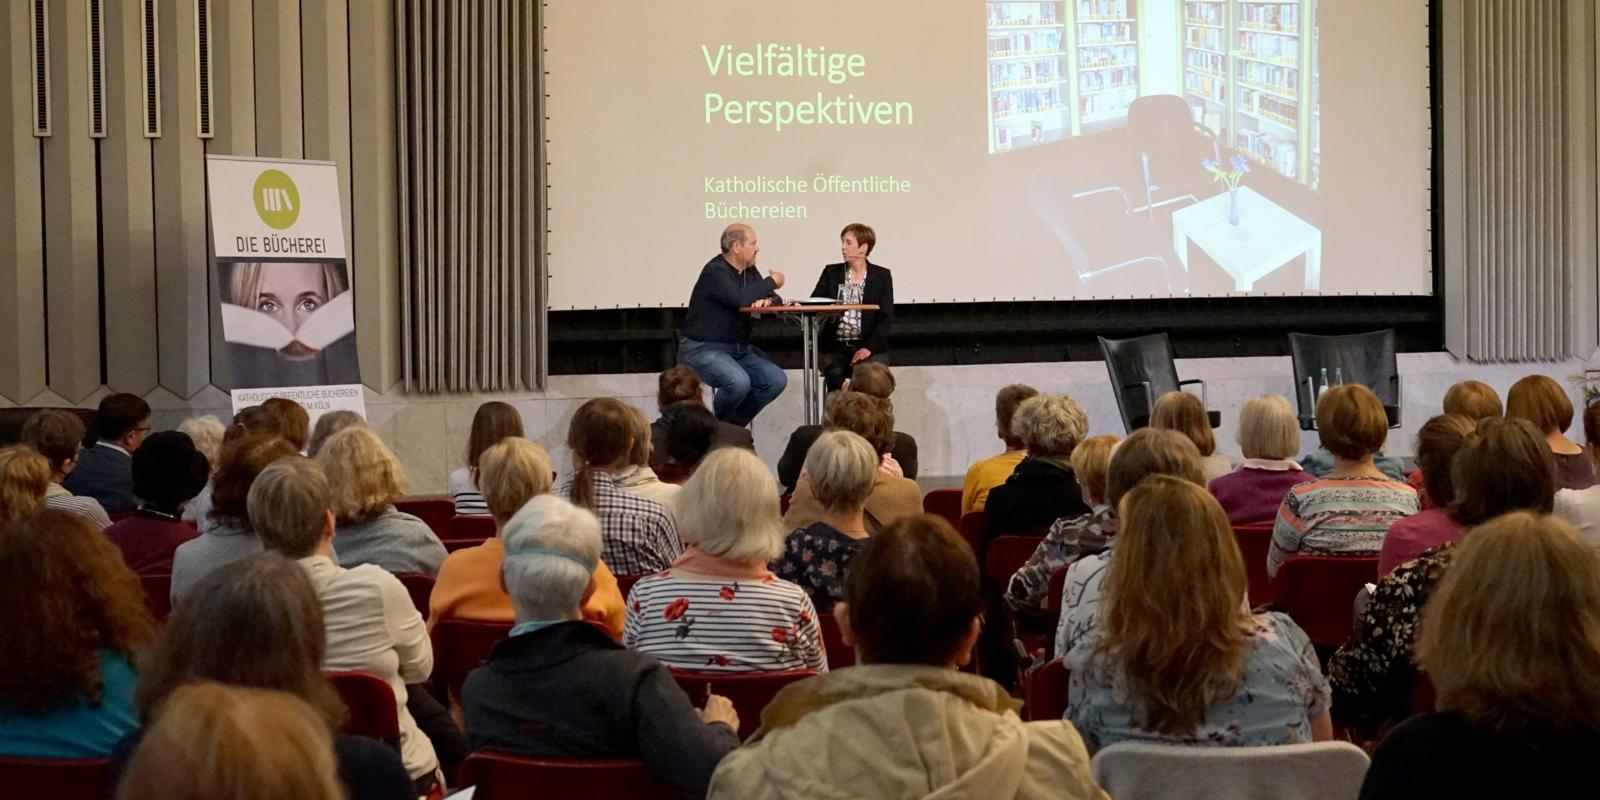 Sechs verschiedene Gäste kamen am Vormittag aufs Podium, um über ihre Perspektive auf Katholische Öffentliche Büchereien und deren Angebote zu sprechen - hier Philipp Jeffré, Diakon aus St. Laurentius, Wuppertal.